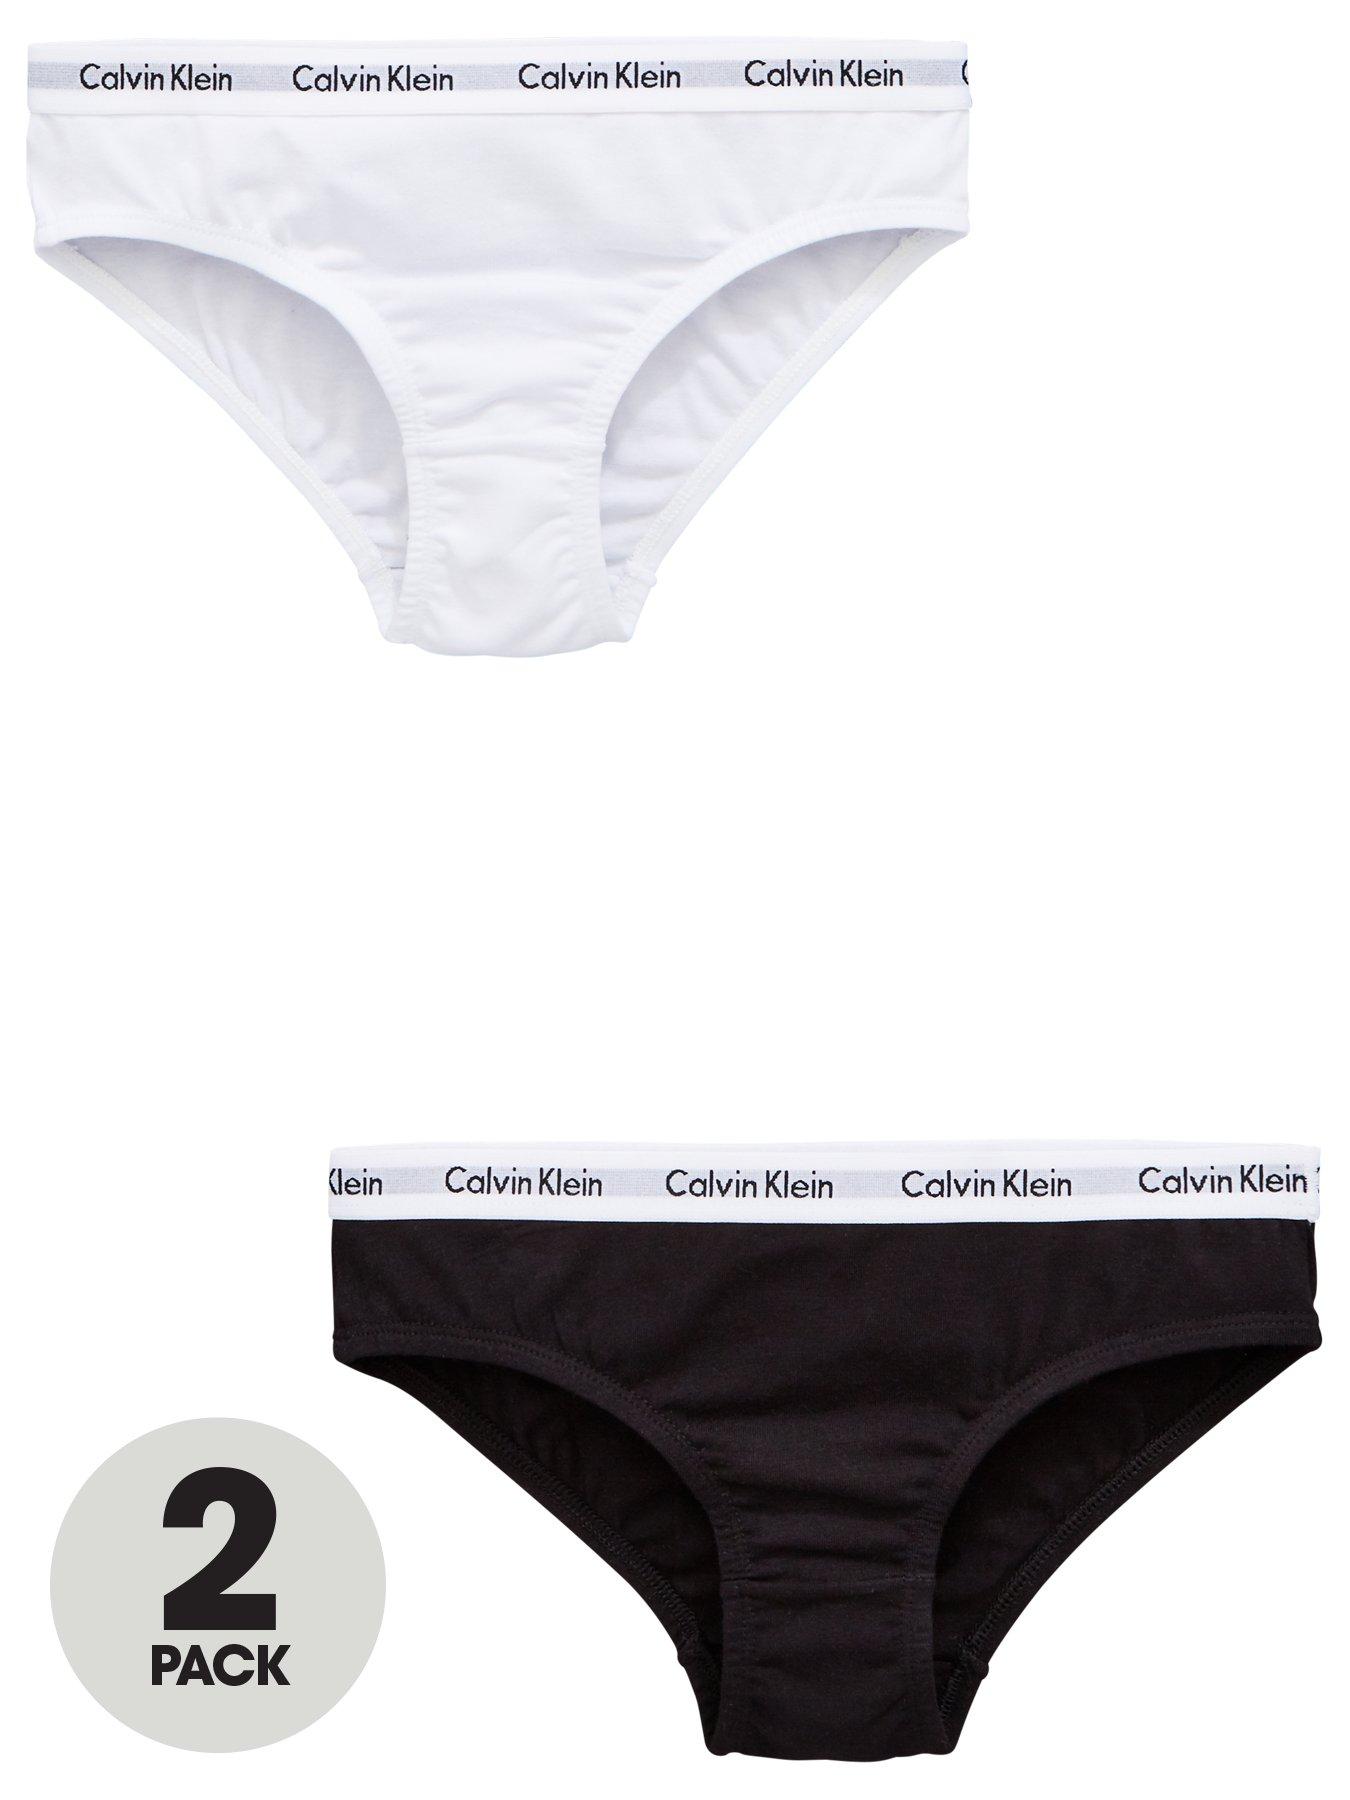 calvin klein ladies underwear